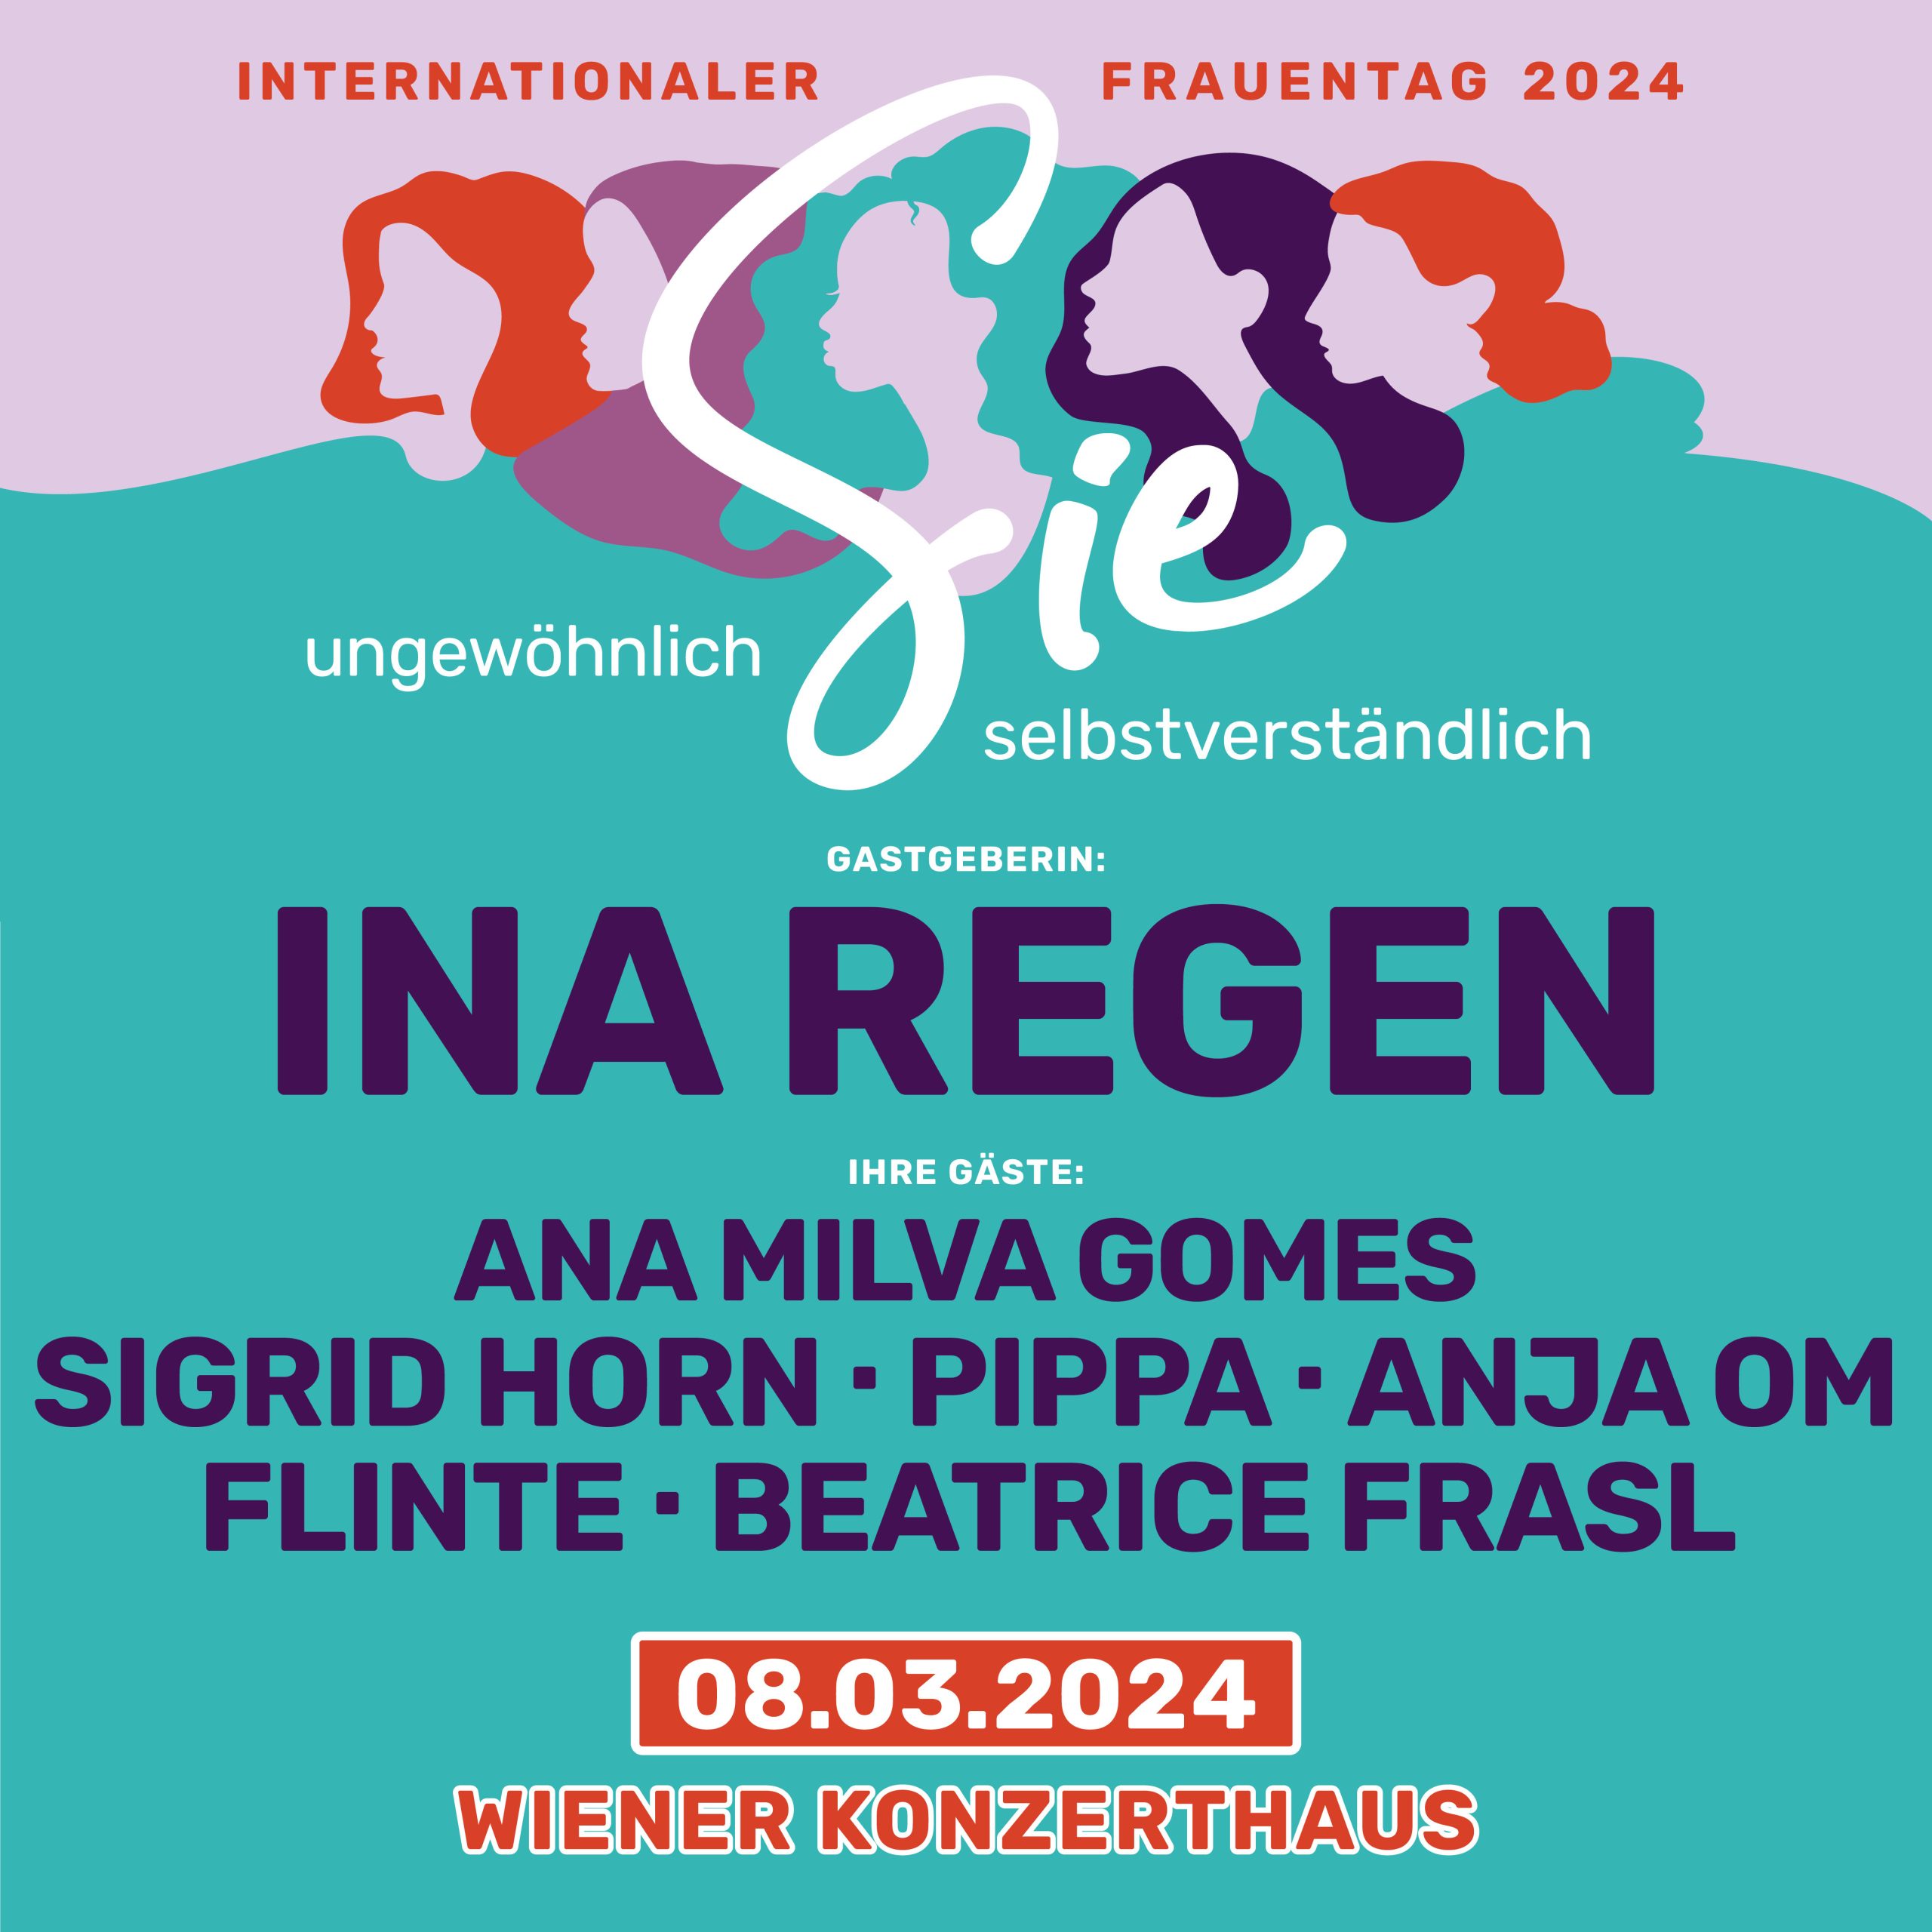 Ina Regen - Internationaler Frauentag 2024 am 8. March 2024 @ Wiener Konzerthaus.